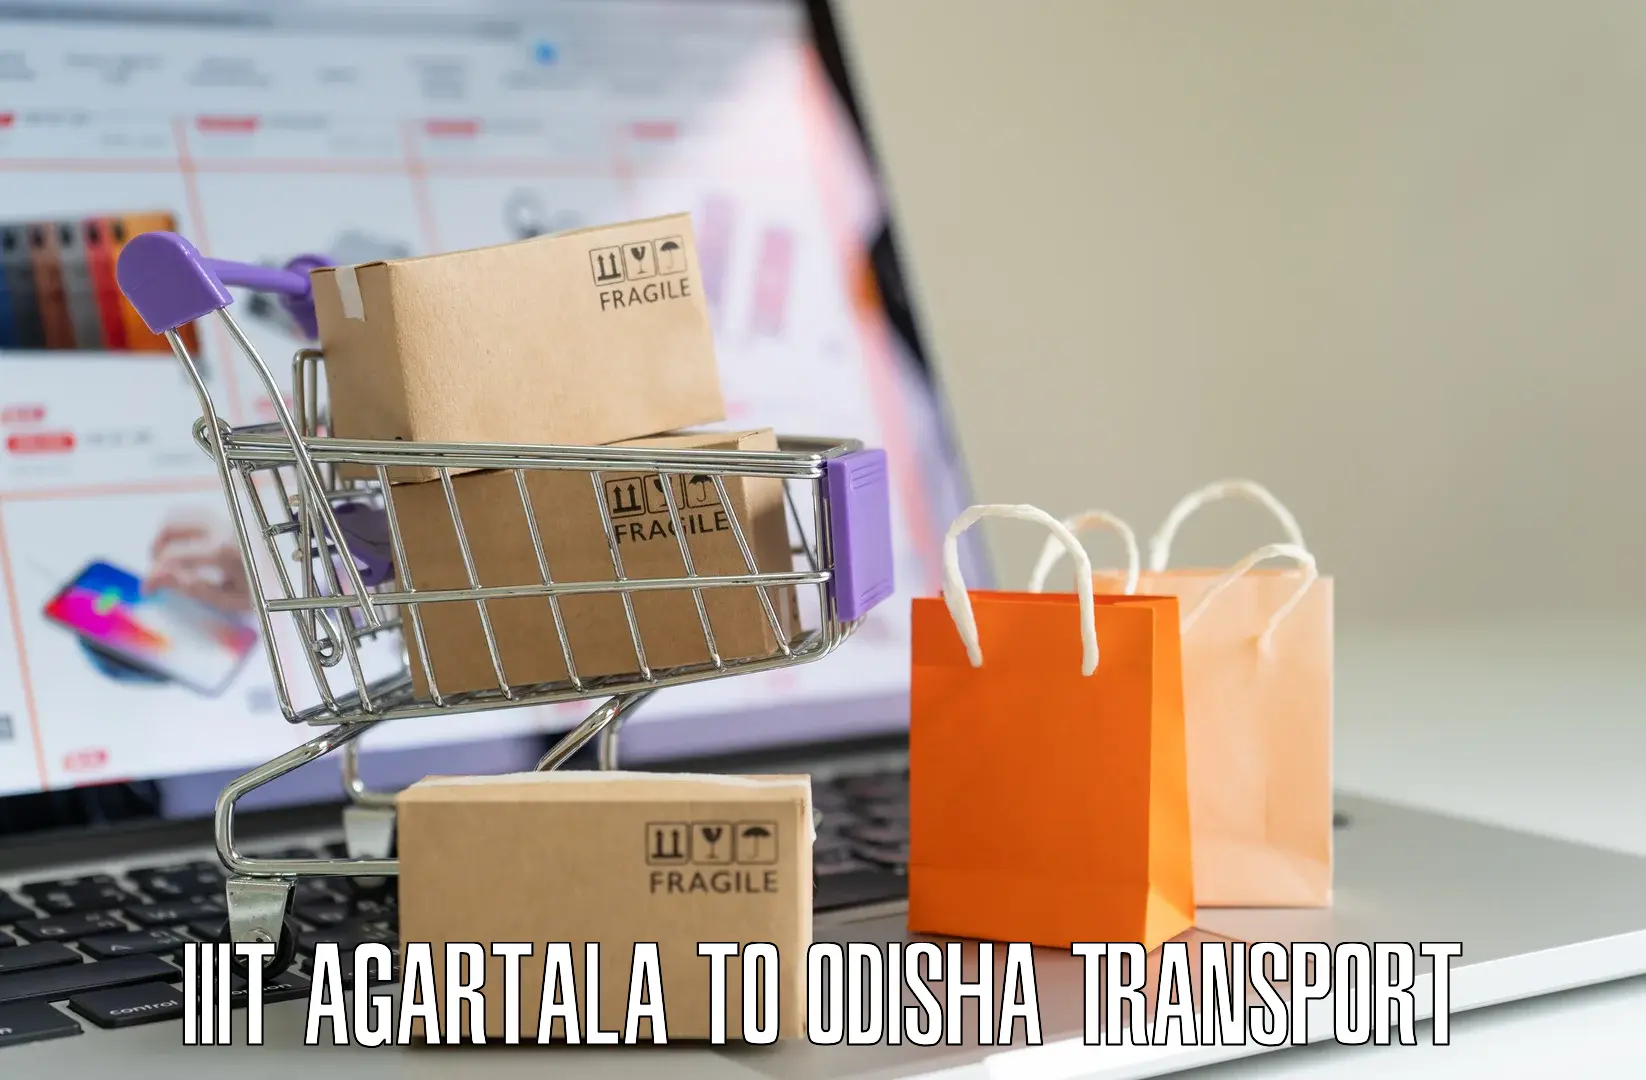 Vehicle courier services IIIT Agartala to Duburi